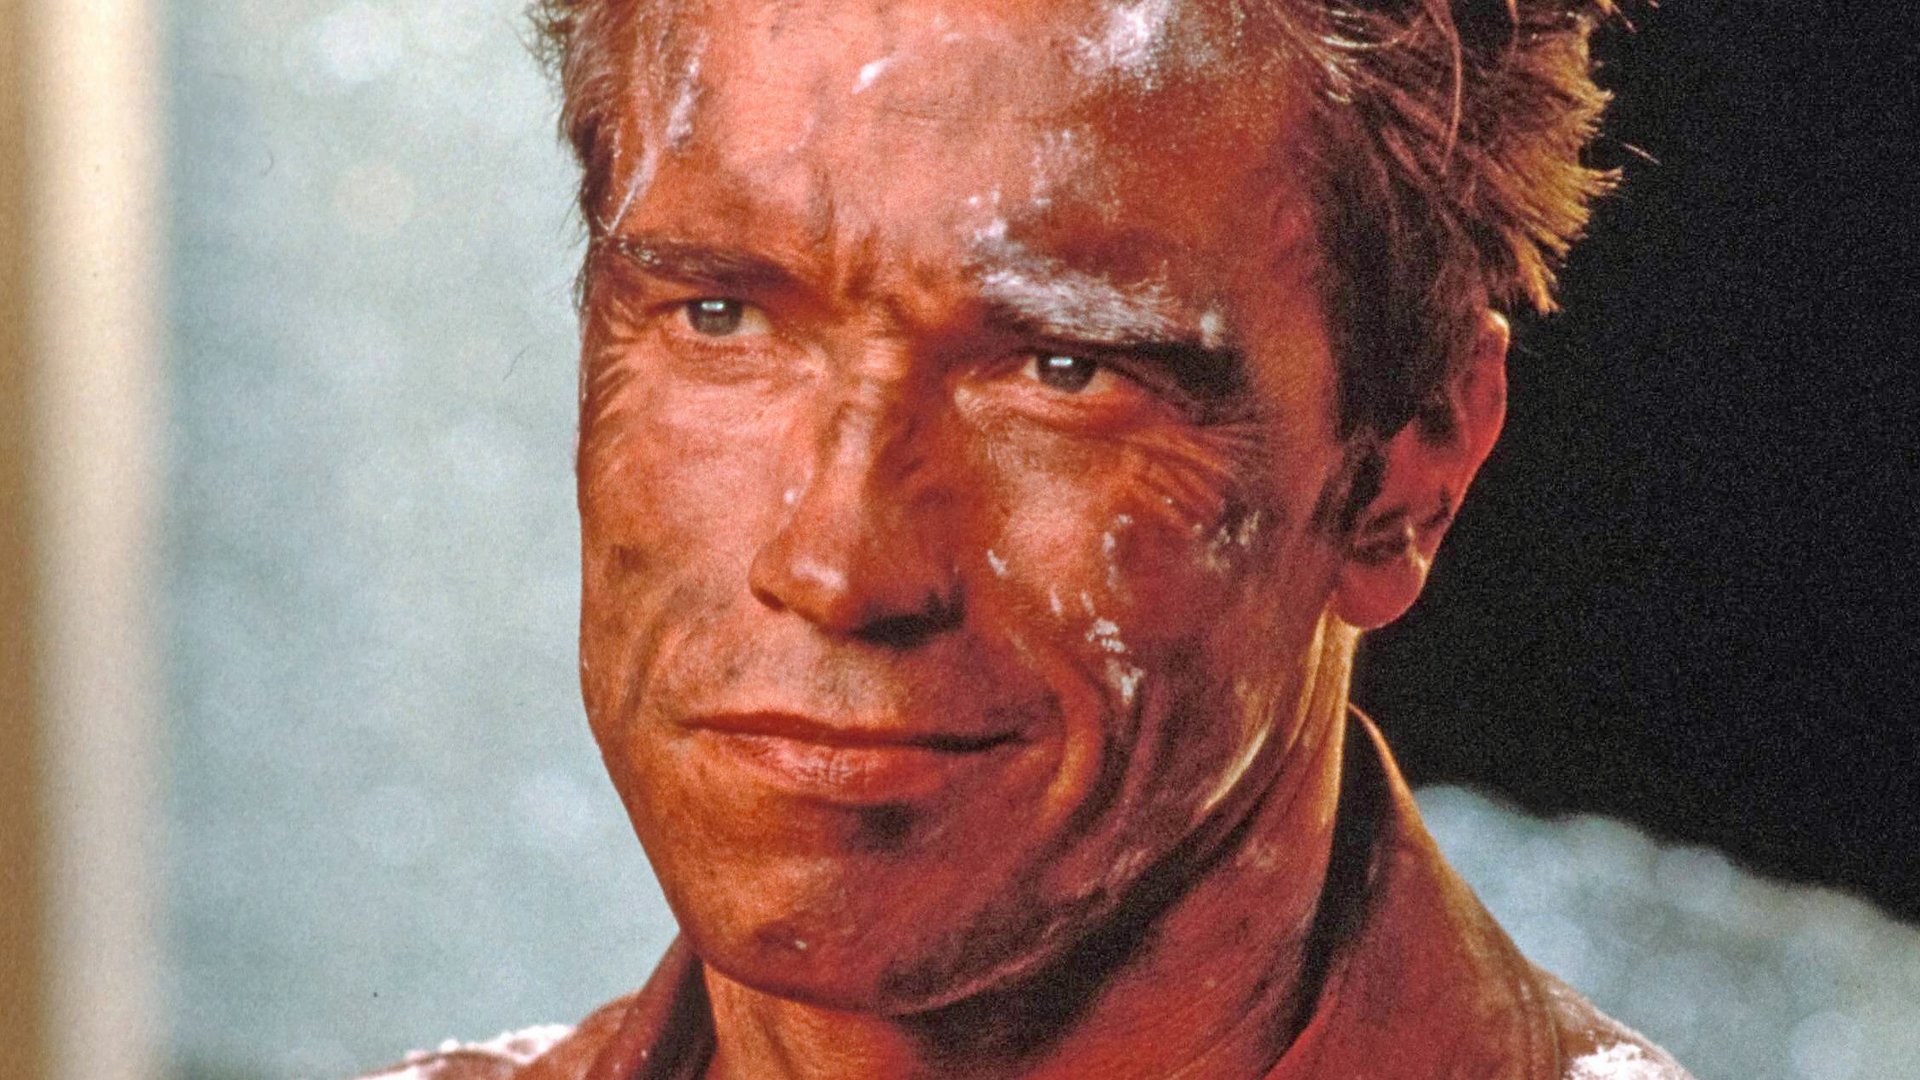 #Heute ohne Werbung im TV: Lieblingsfilm von Arnold Schwarzenegger, der im Kino gefloppt ist